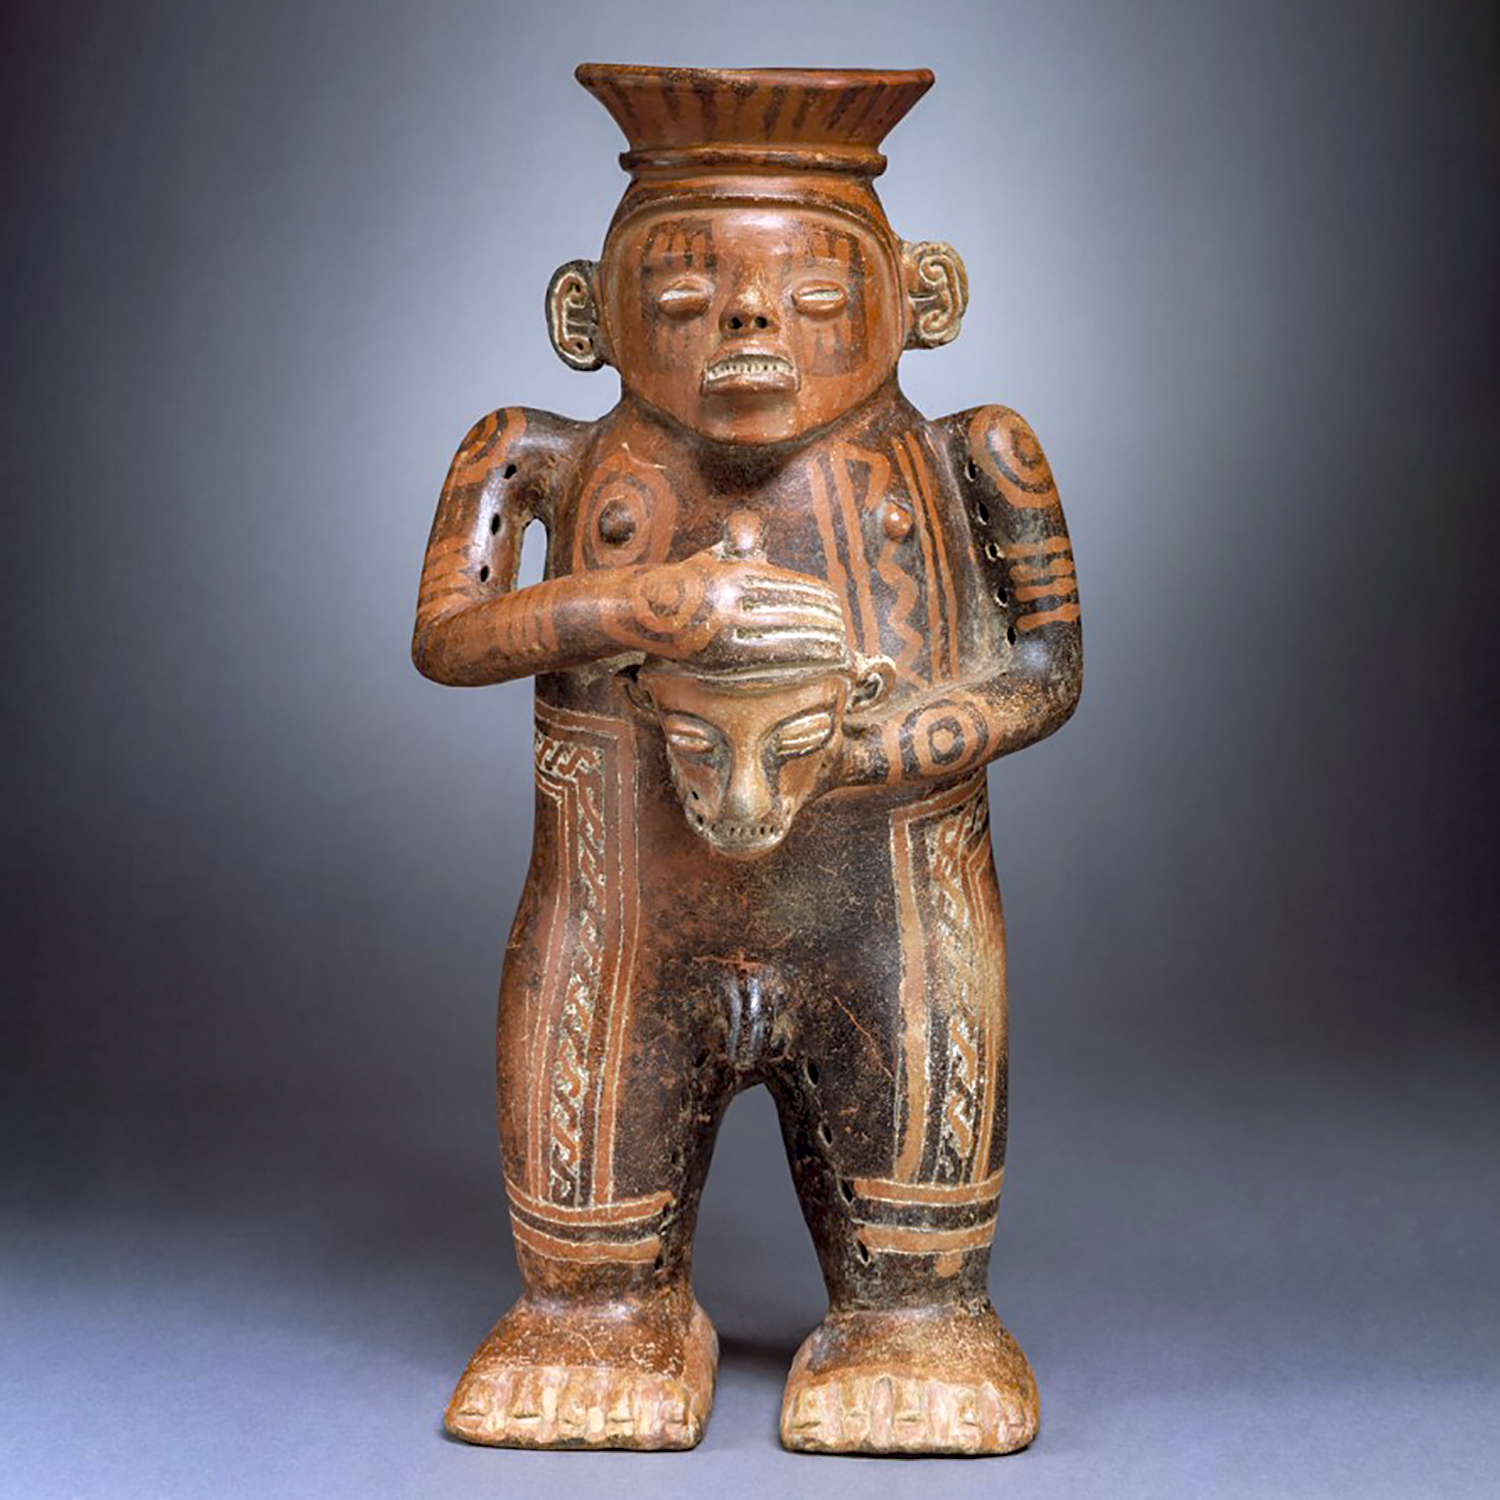 Воин с трофейной головой. Коста-Рика, 500-1000 гг. н.э. Коллекция Denver Art Museum.